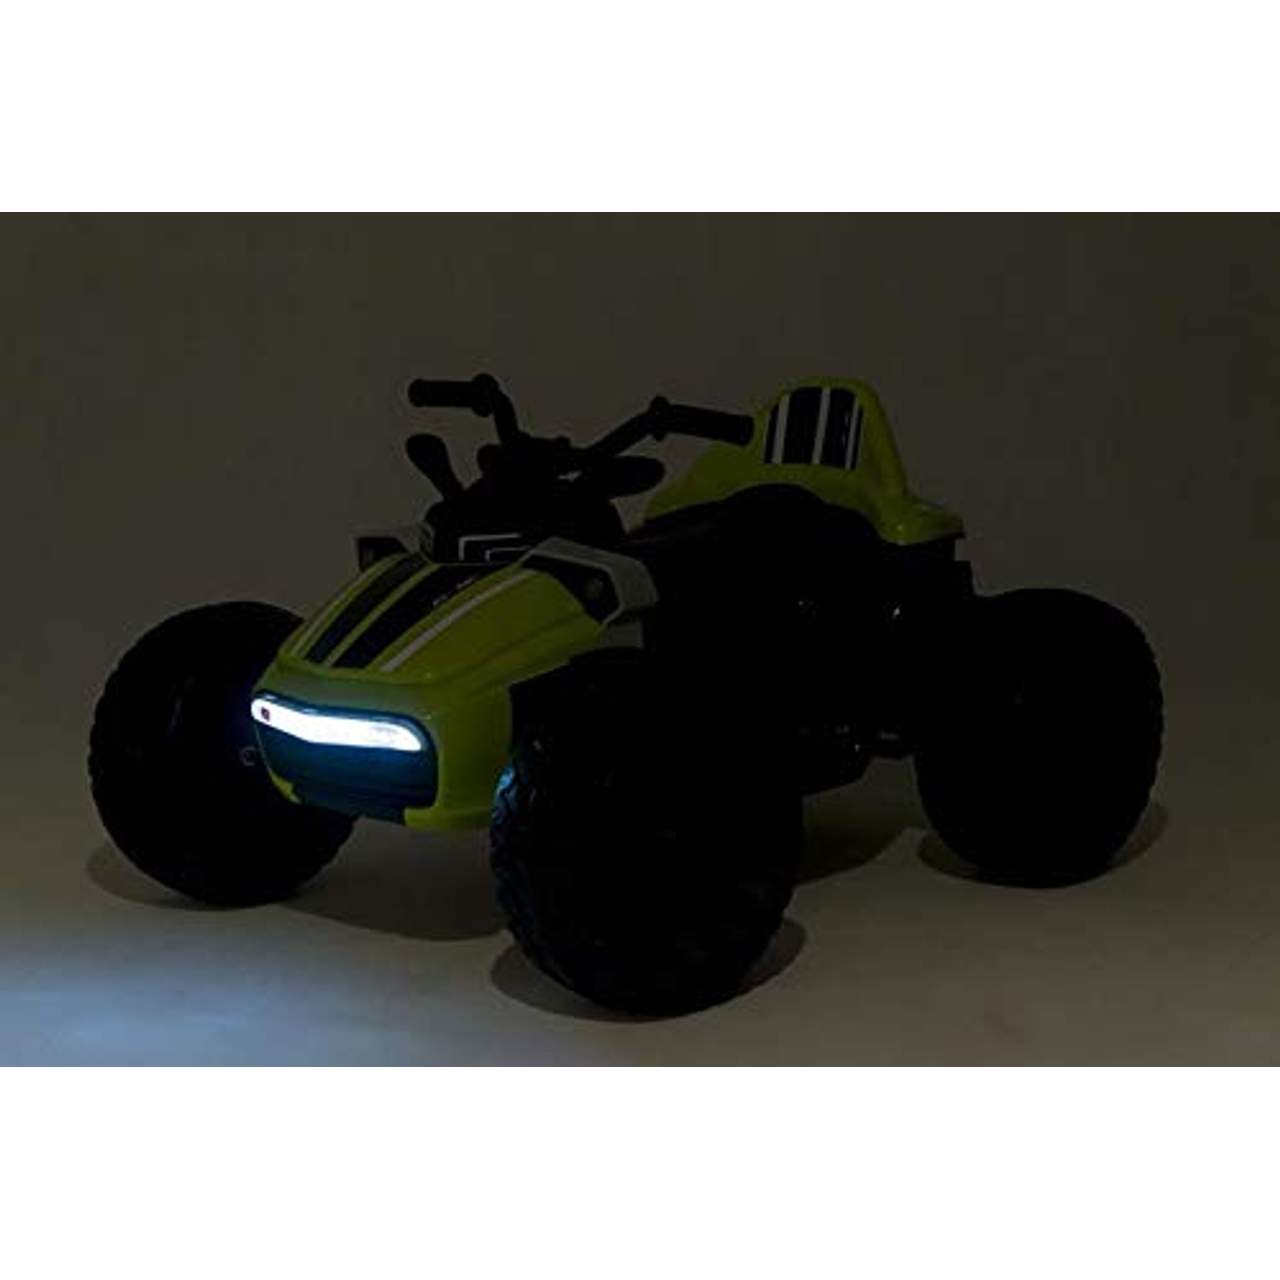 Triway Green Racer Supersport Future 12V Elektroquad